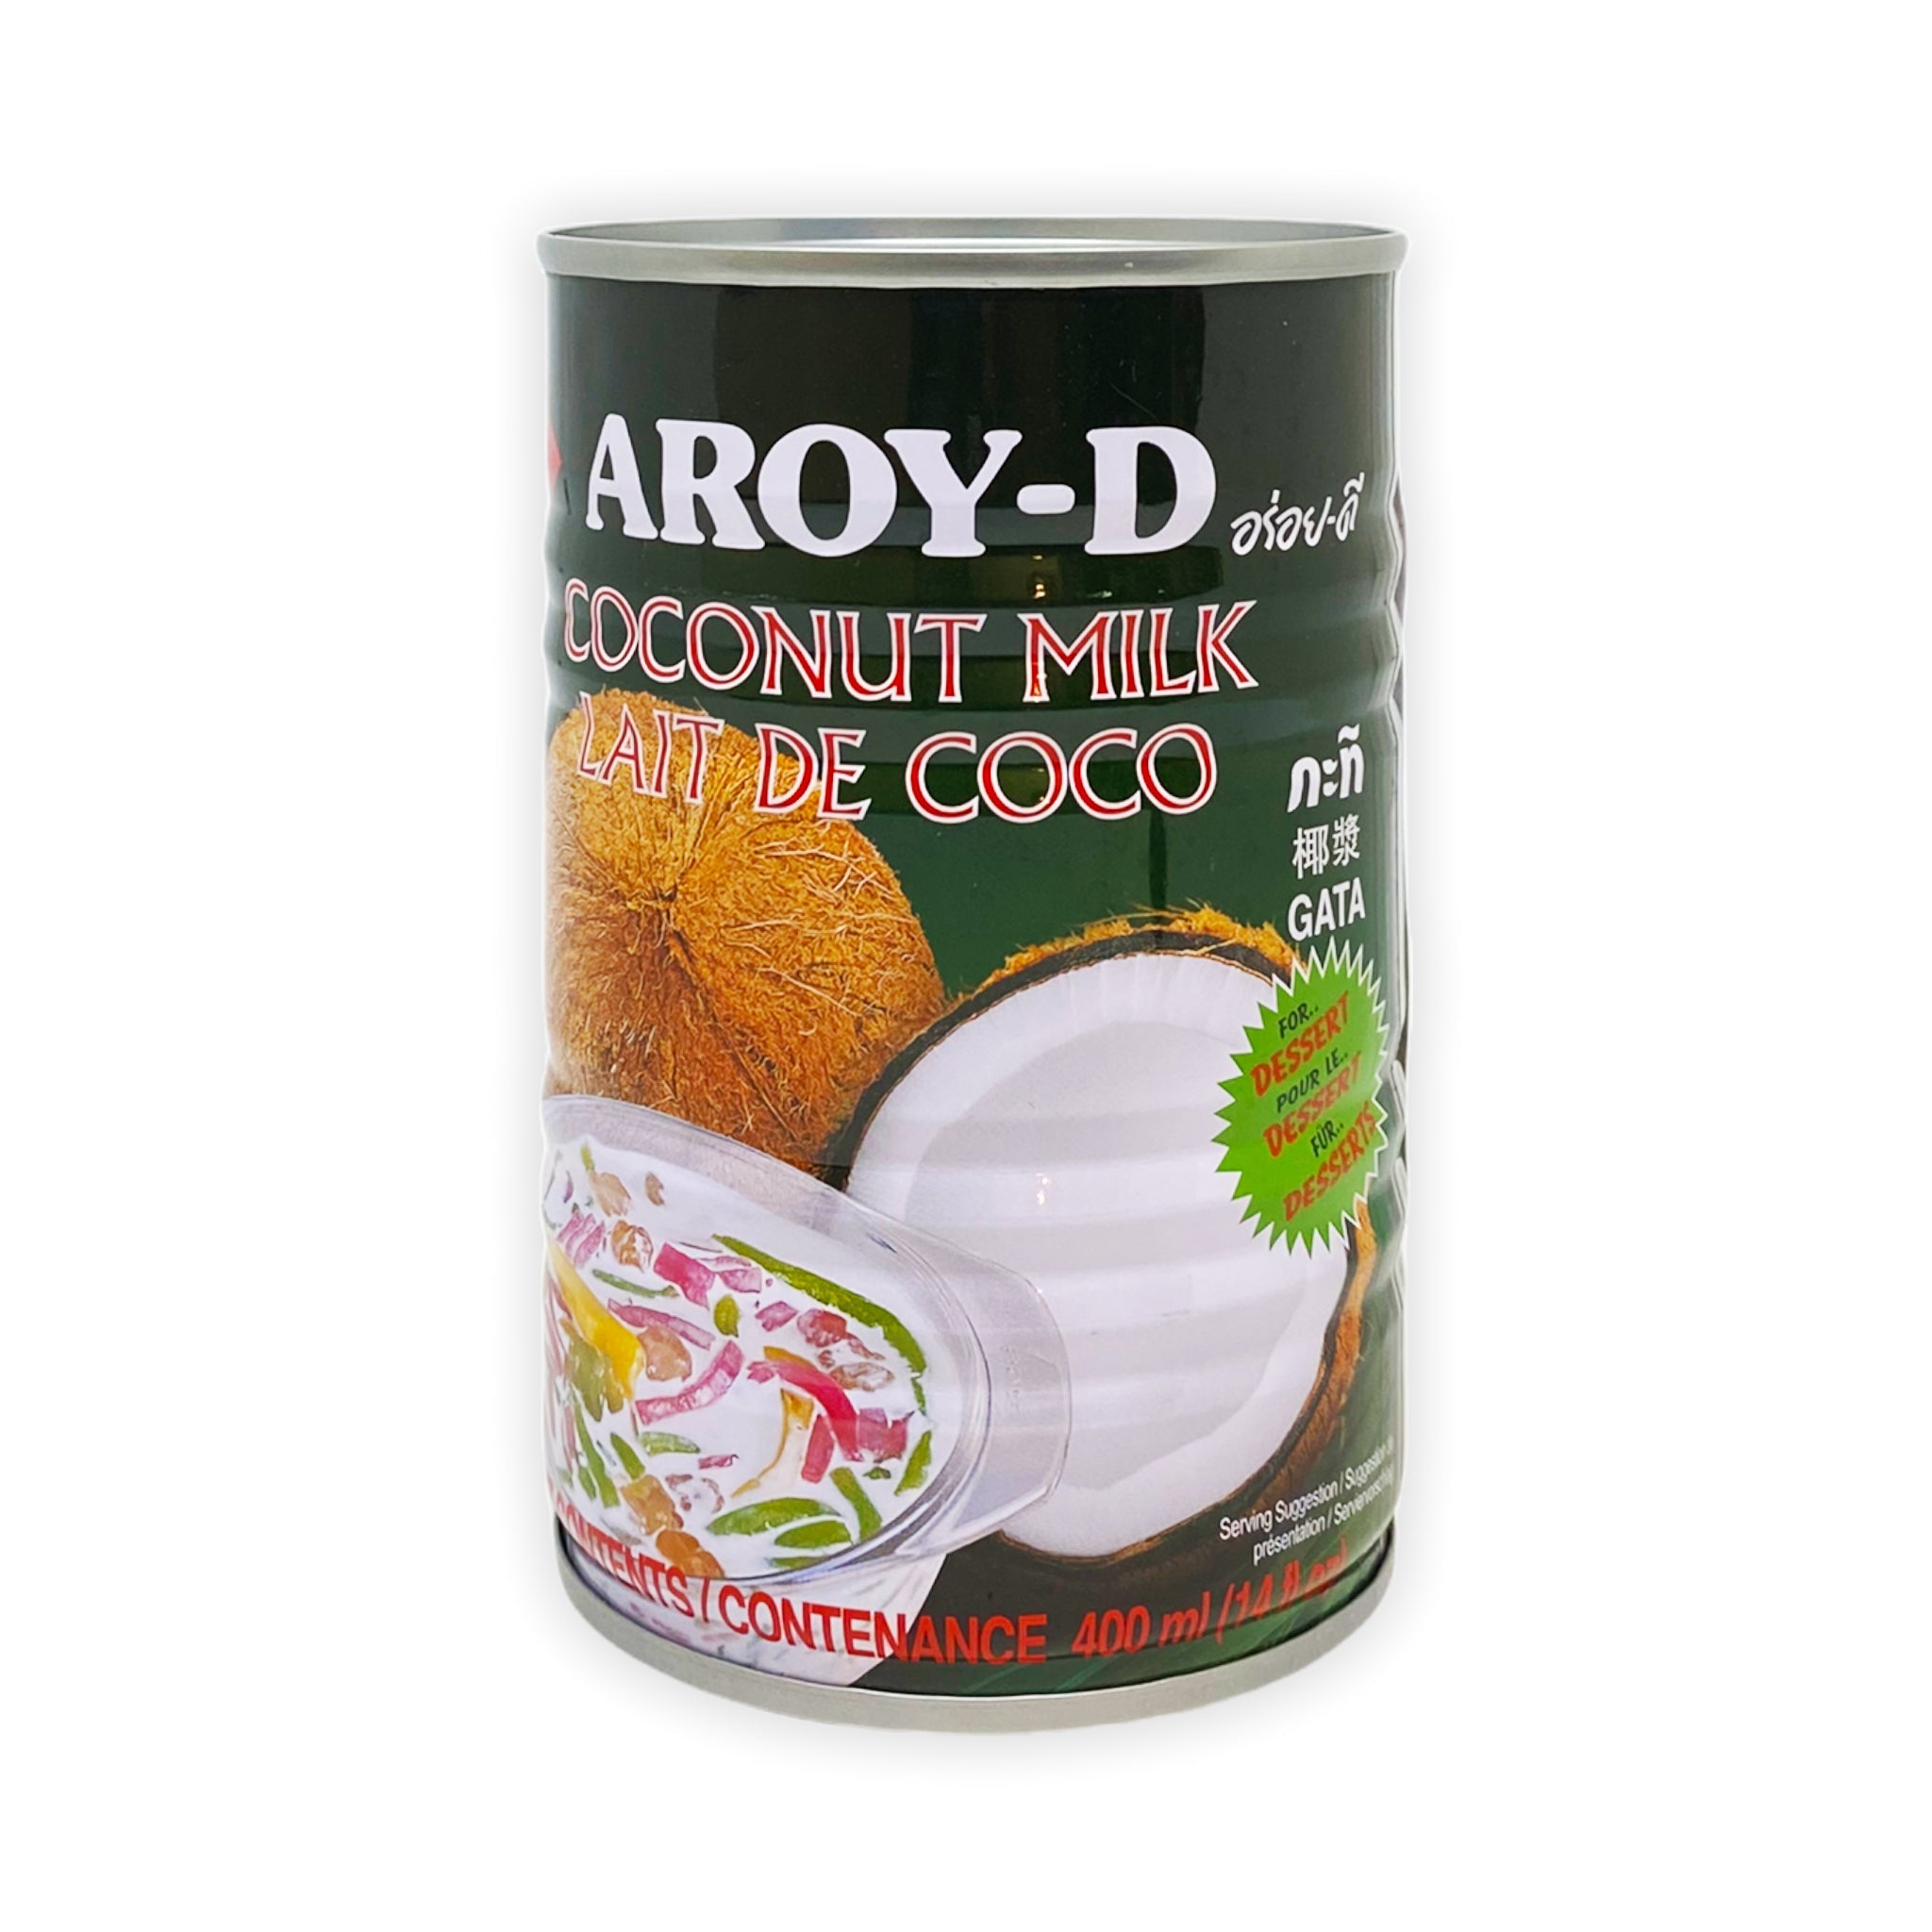 Coconut milk for dessert